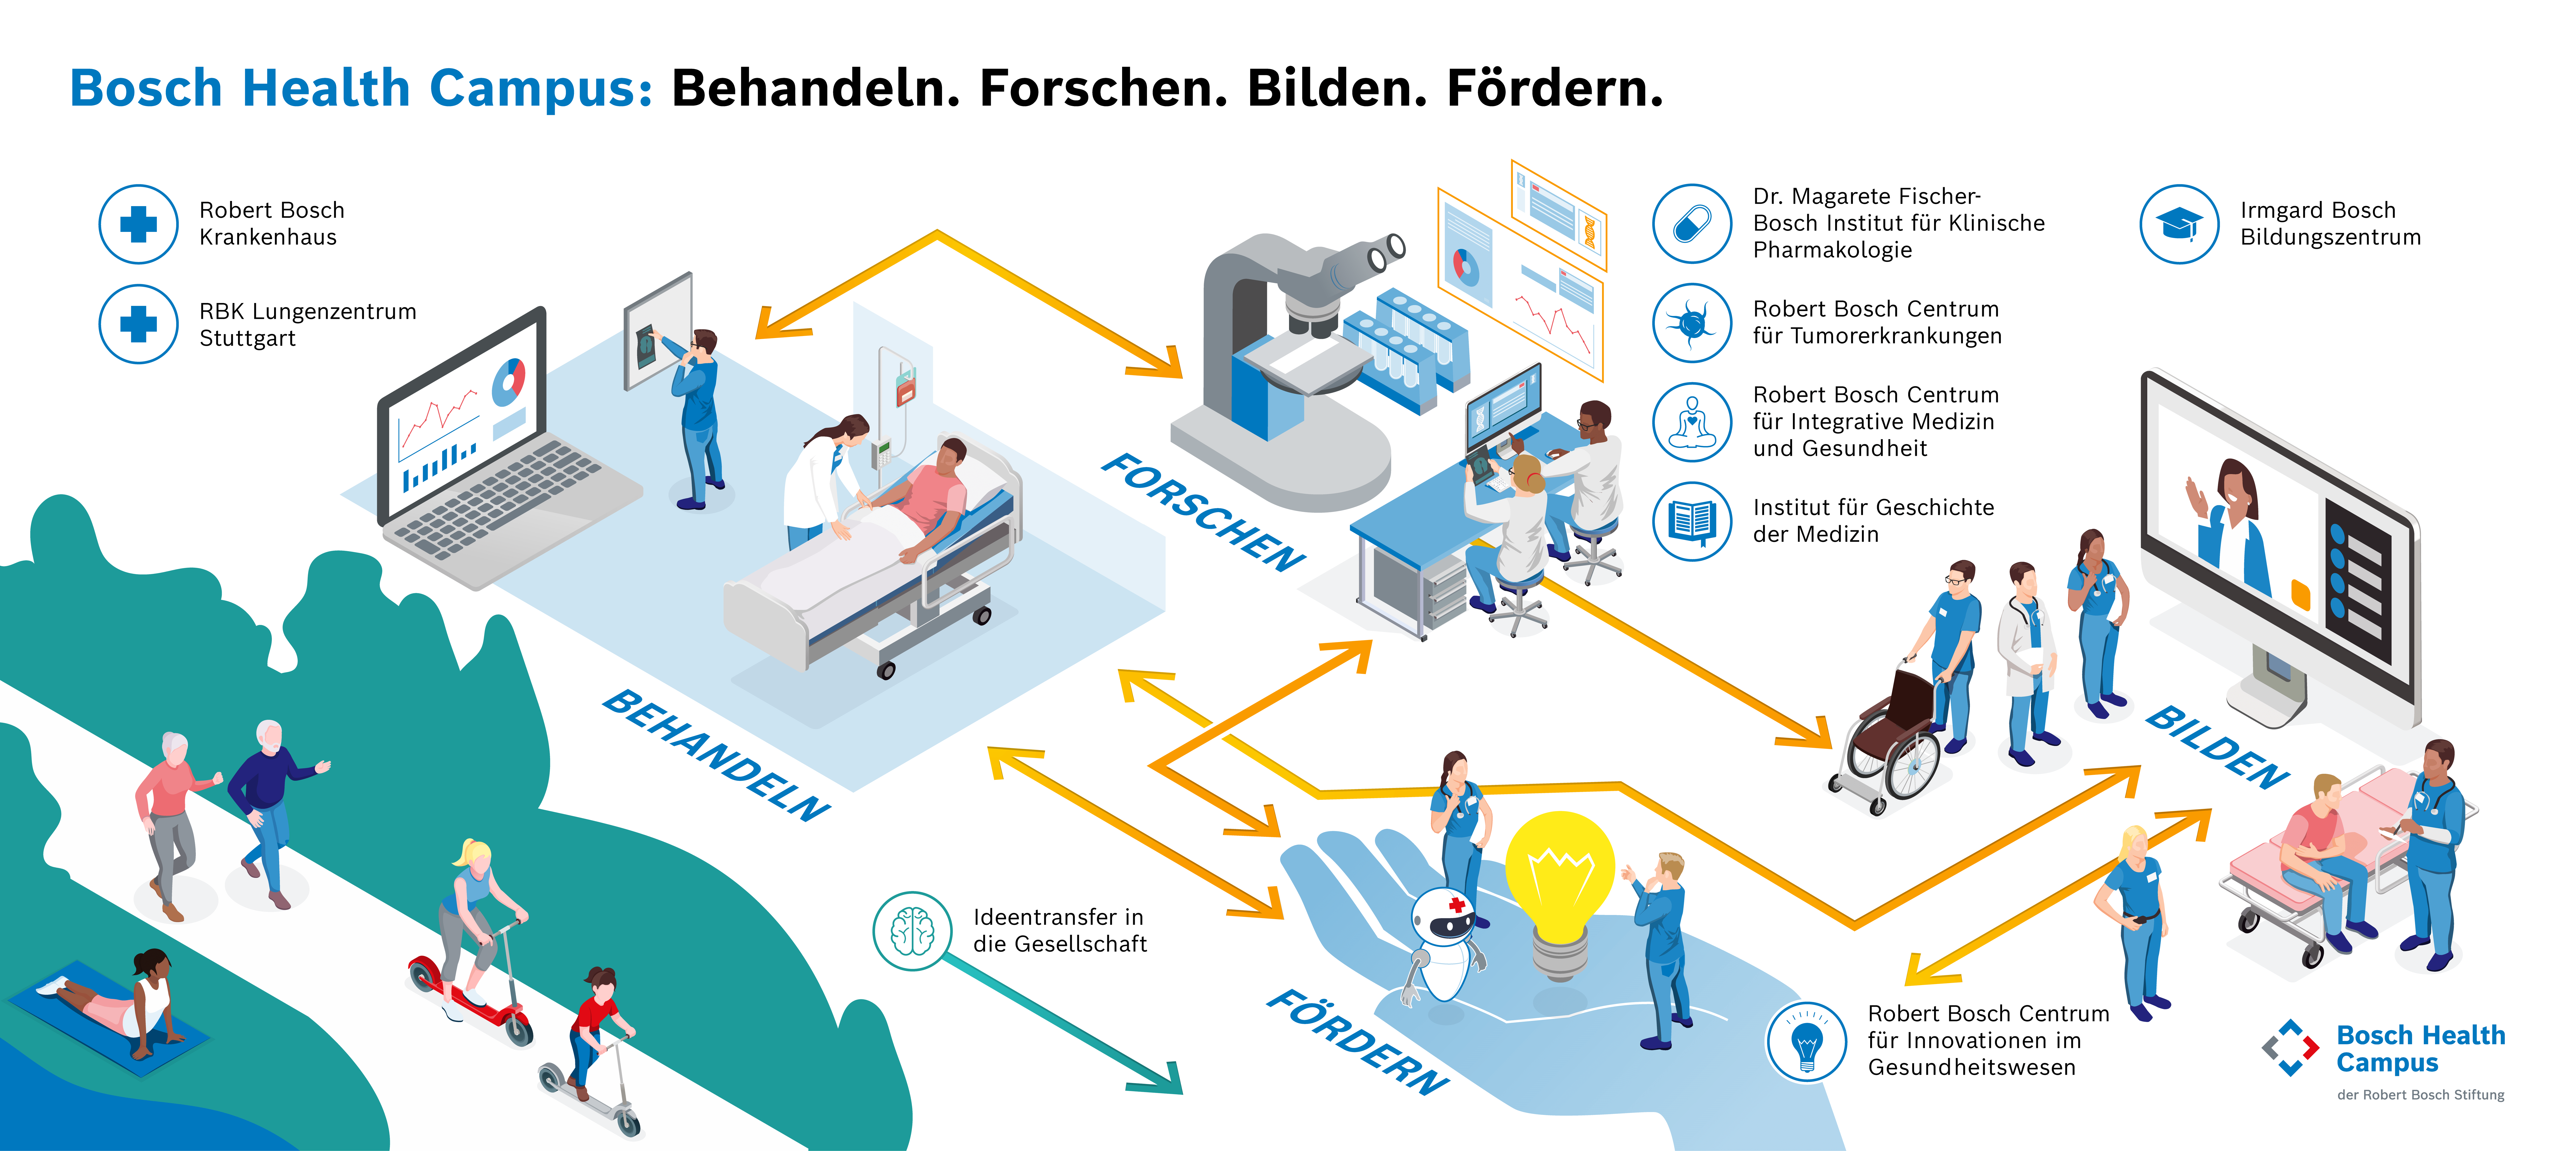 Grafik über den Bosch Health Campus